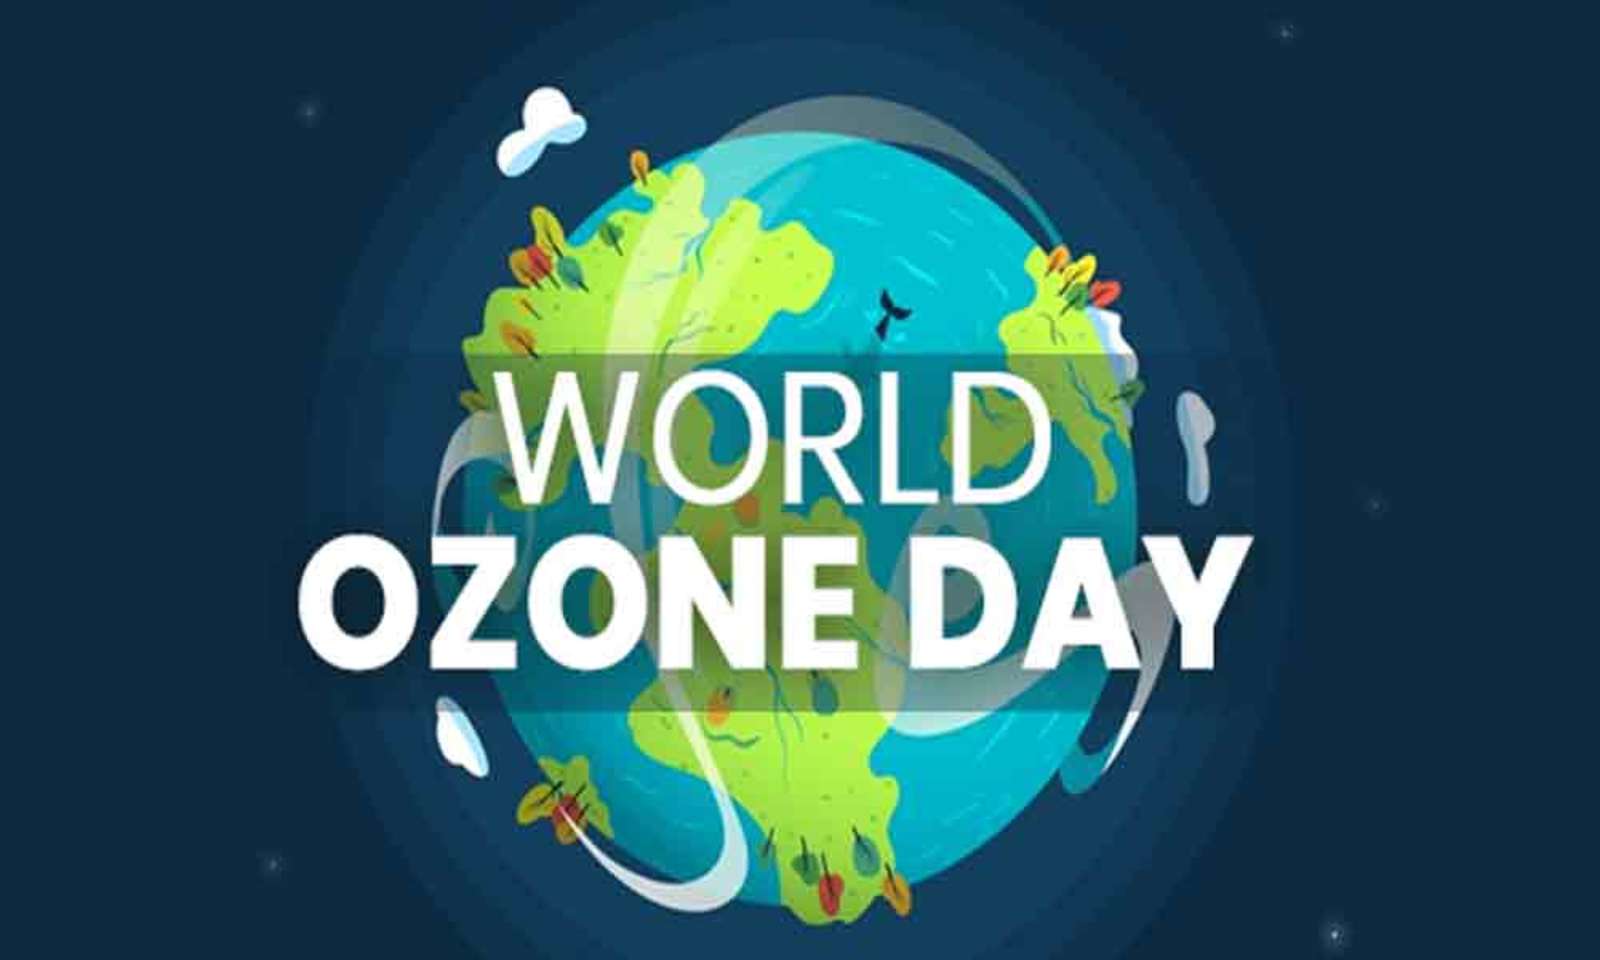 World Ozone Day 2020: Ozone for Life